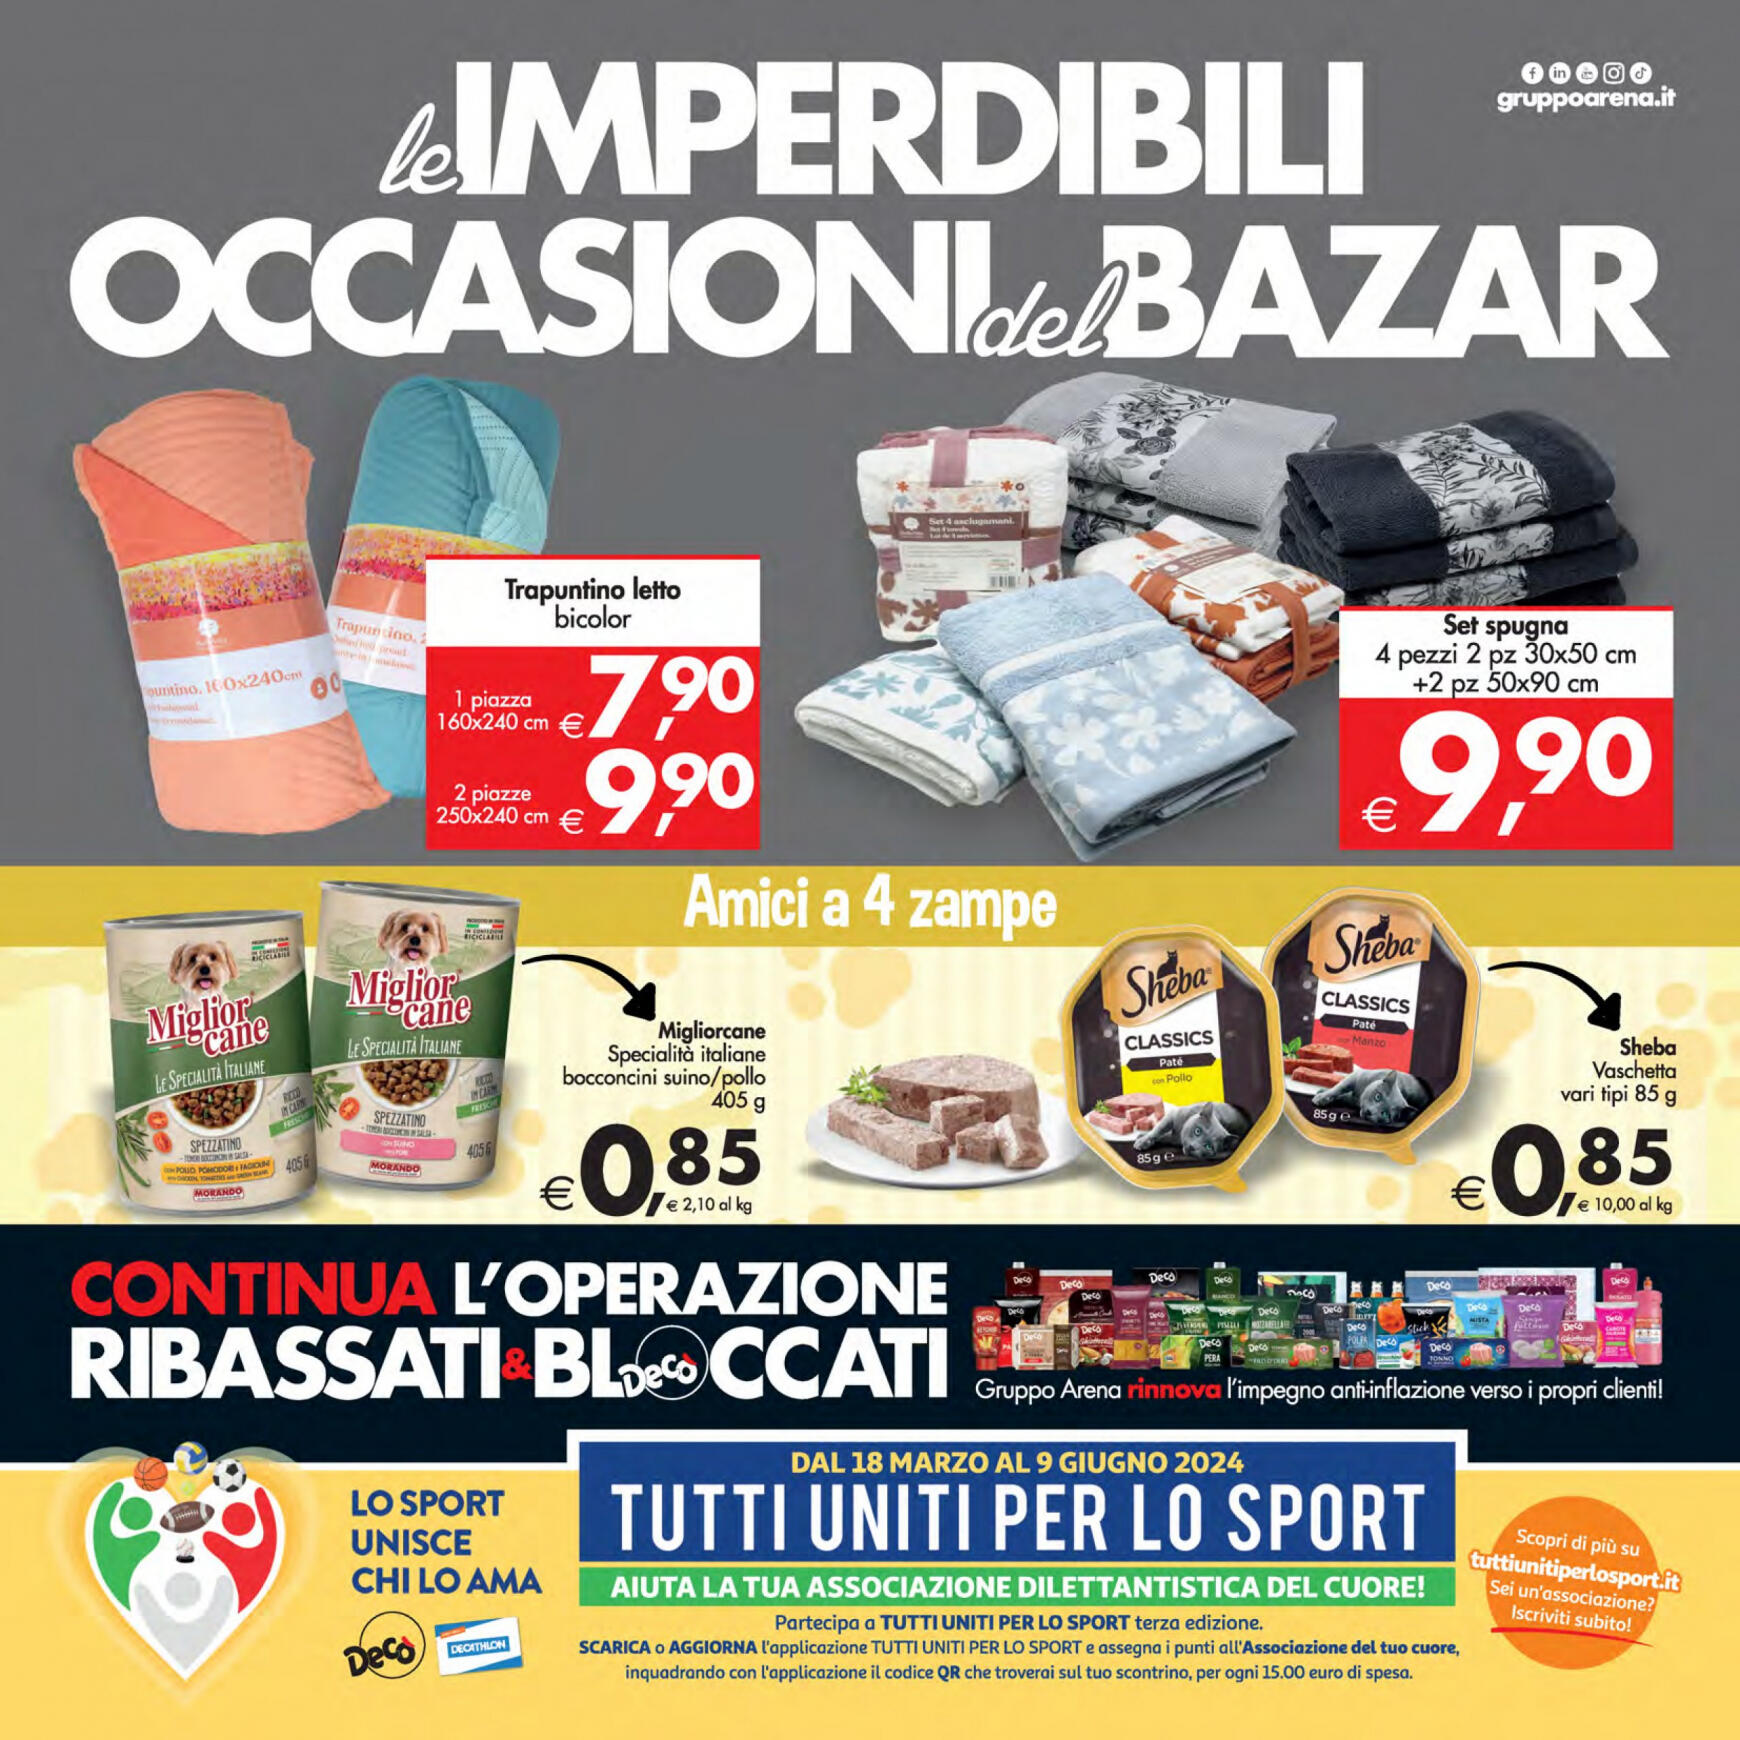 deco - Nuovo volantino Decò - Supermercati/Maxistore/Local 23.04. - 02.05. - page: 20